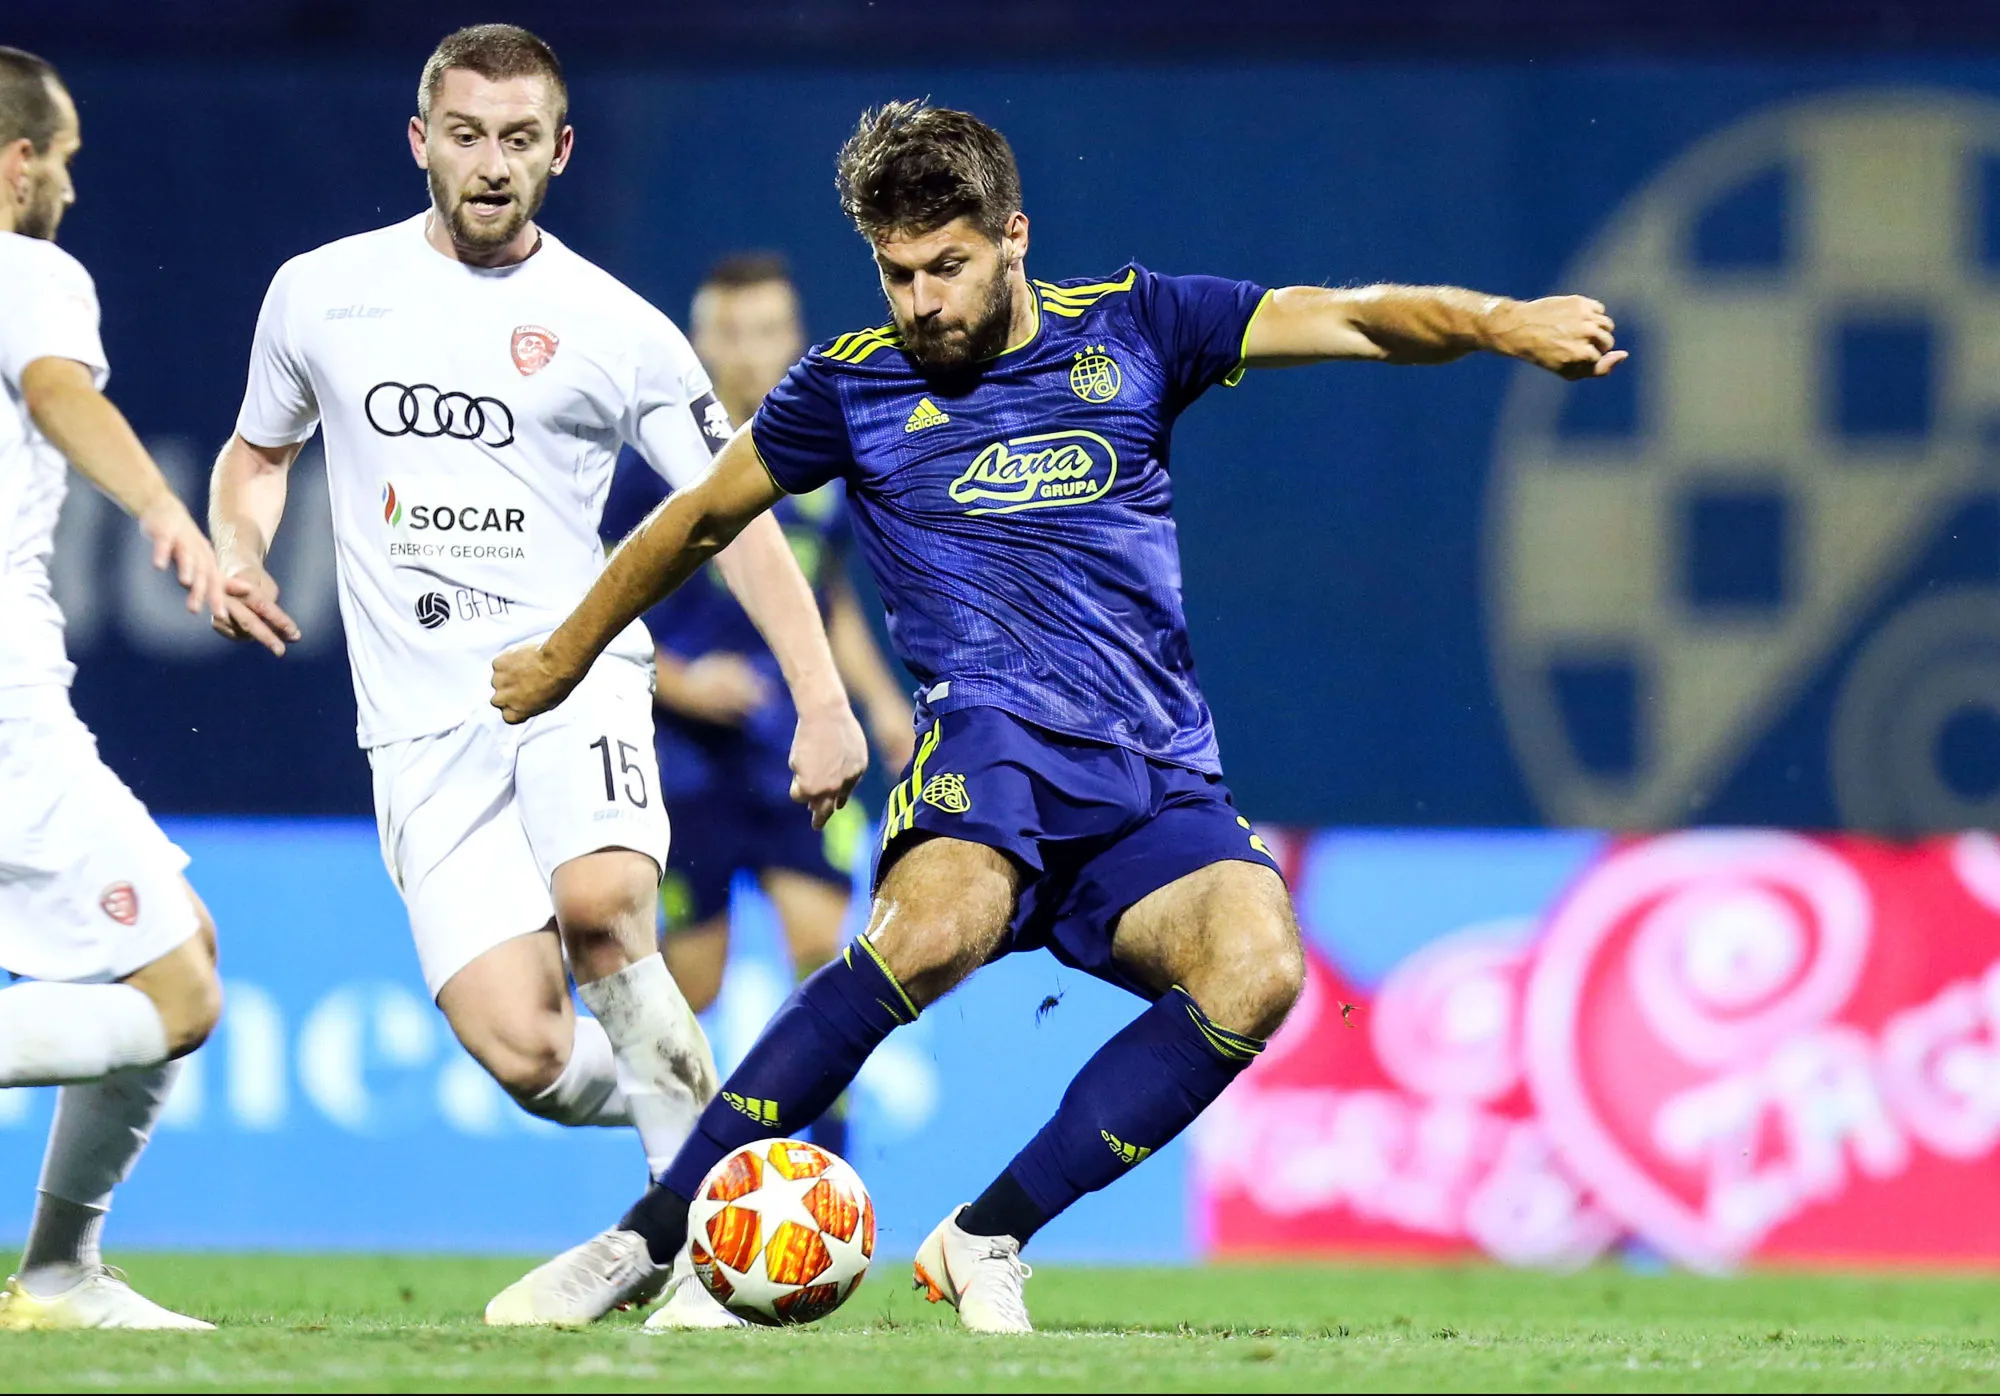 Pronostic Dinamo Zagreb Atalanta Bergame : Analyse, prono et cotes du match de Ligue des champions